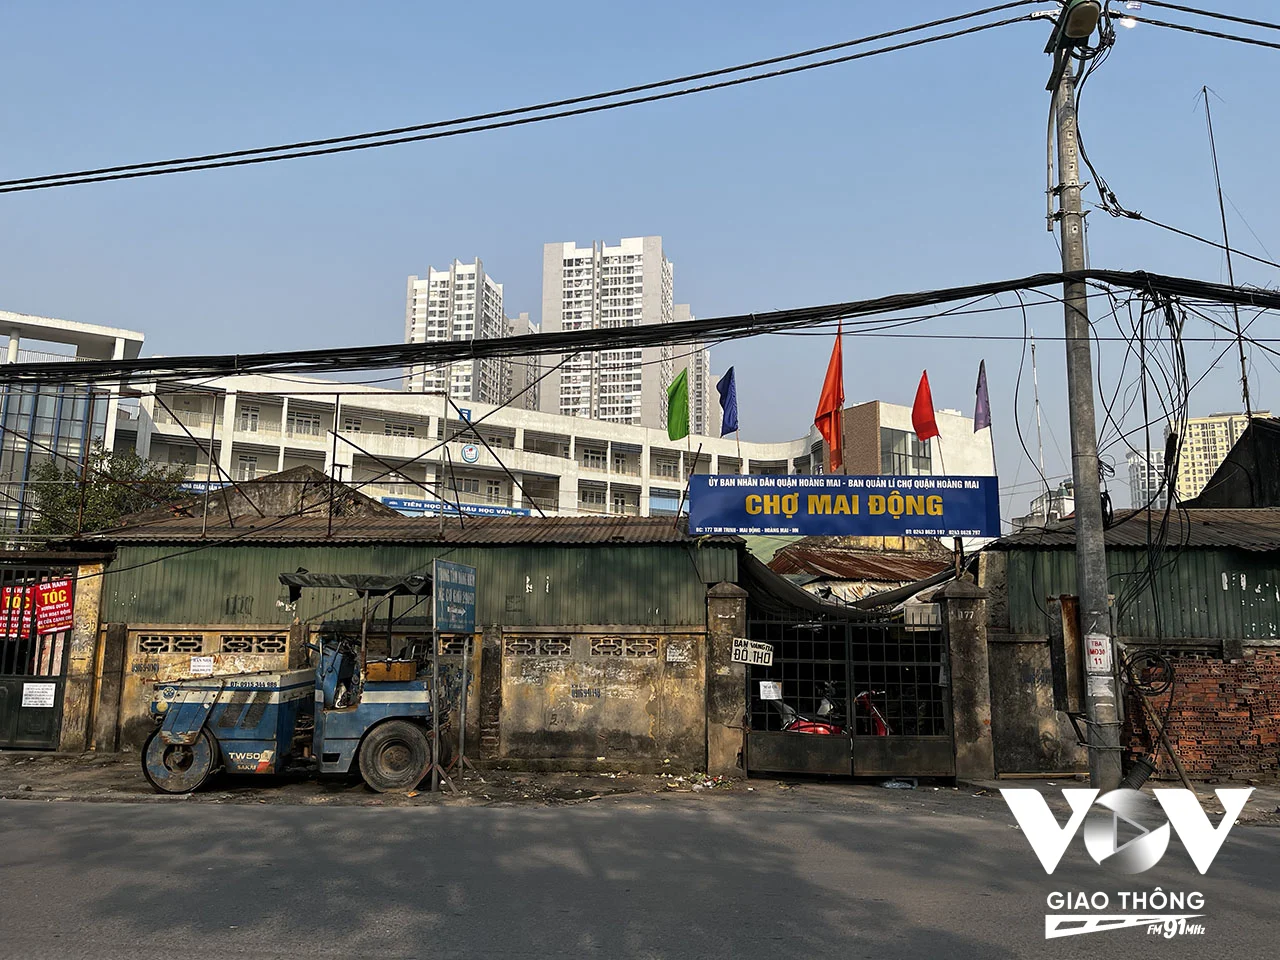 300 hộ kinh doanh ở chợ Mai Động được thông báo 'khẩn cấp' phải dọn ra khỏi chợ để trả lại mặt bằng cho Dự án mở rộng đường Tam Trinh. Ảnh: Quang Hùng